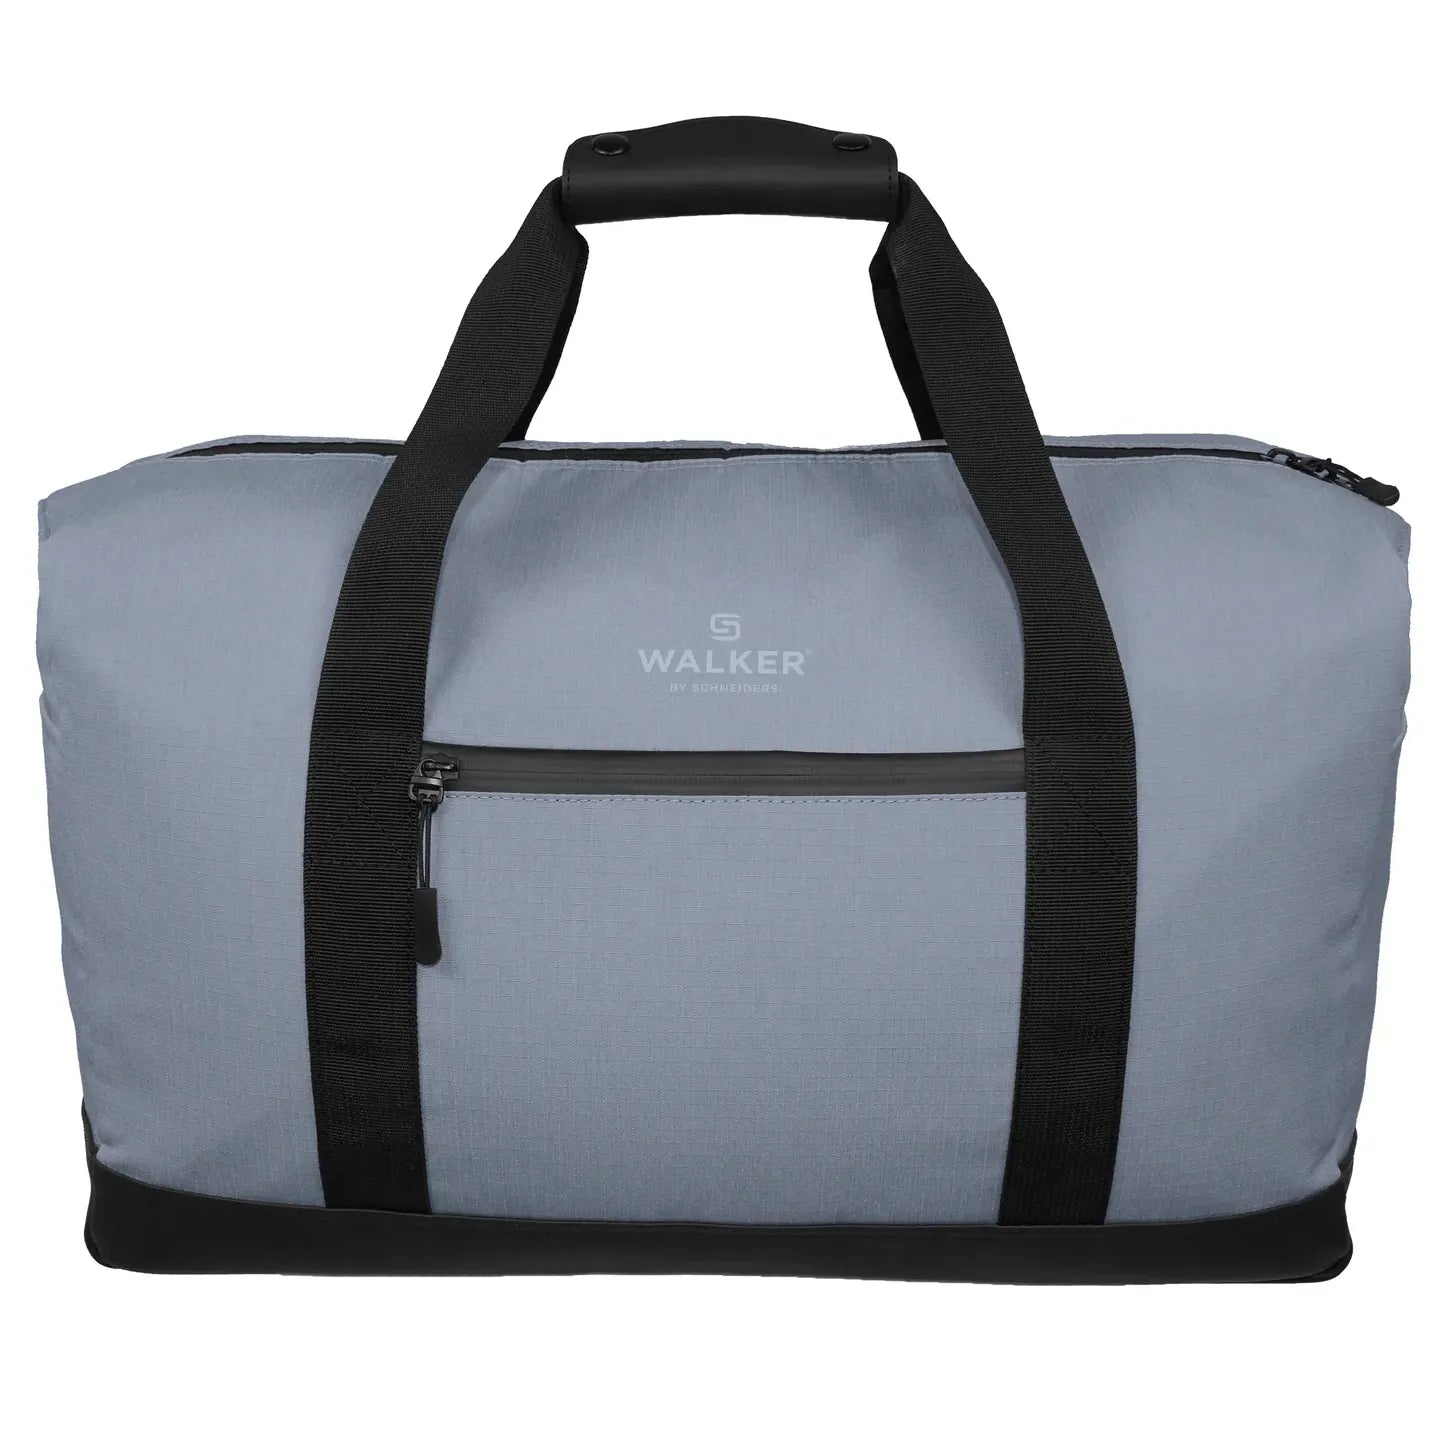 Walker Miami Weekender Travel Bag 48 cm - Grey